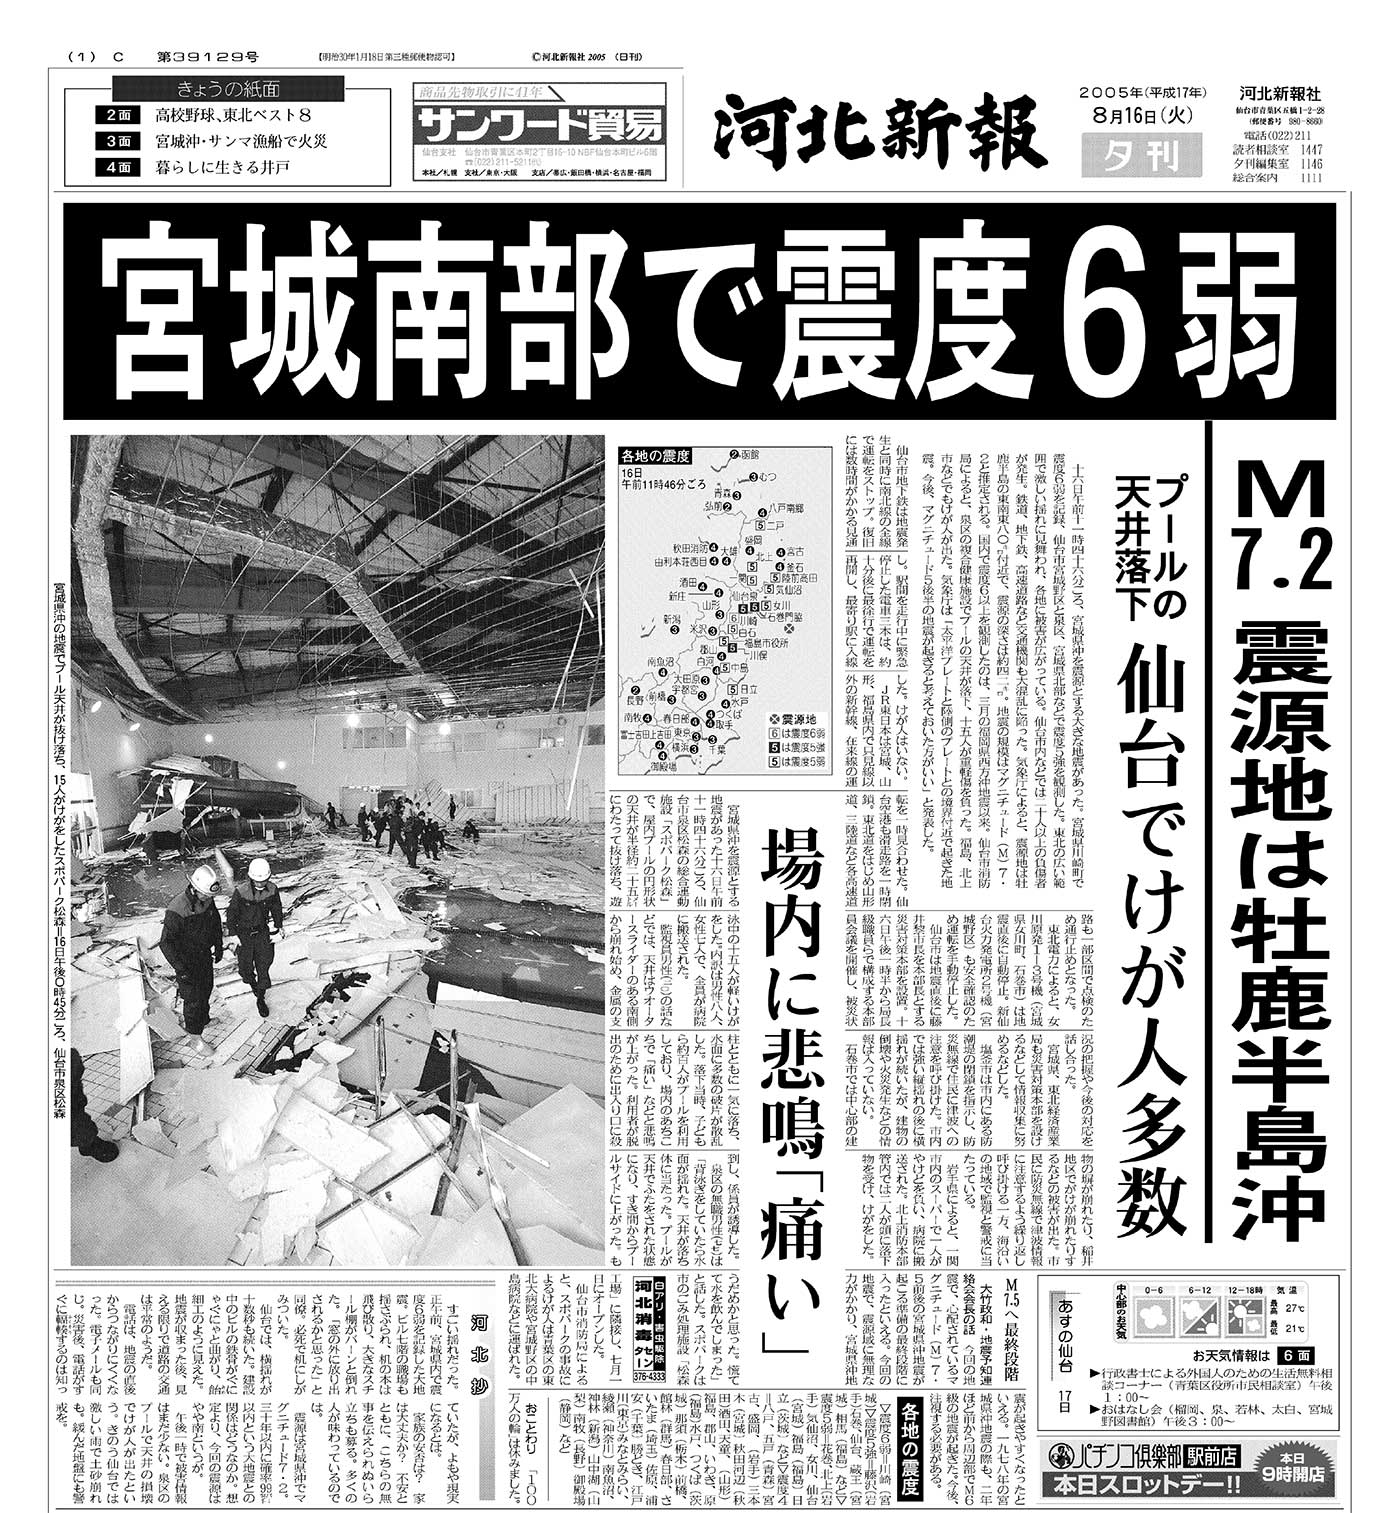 宮城県南部地震 05年8月16日 災害カレンダー Yahoo 天気 災害